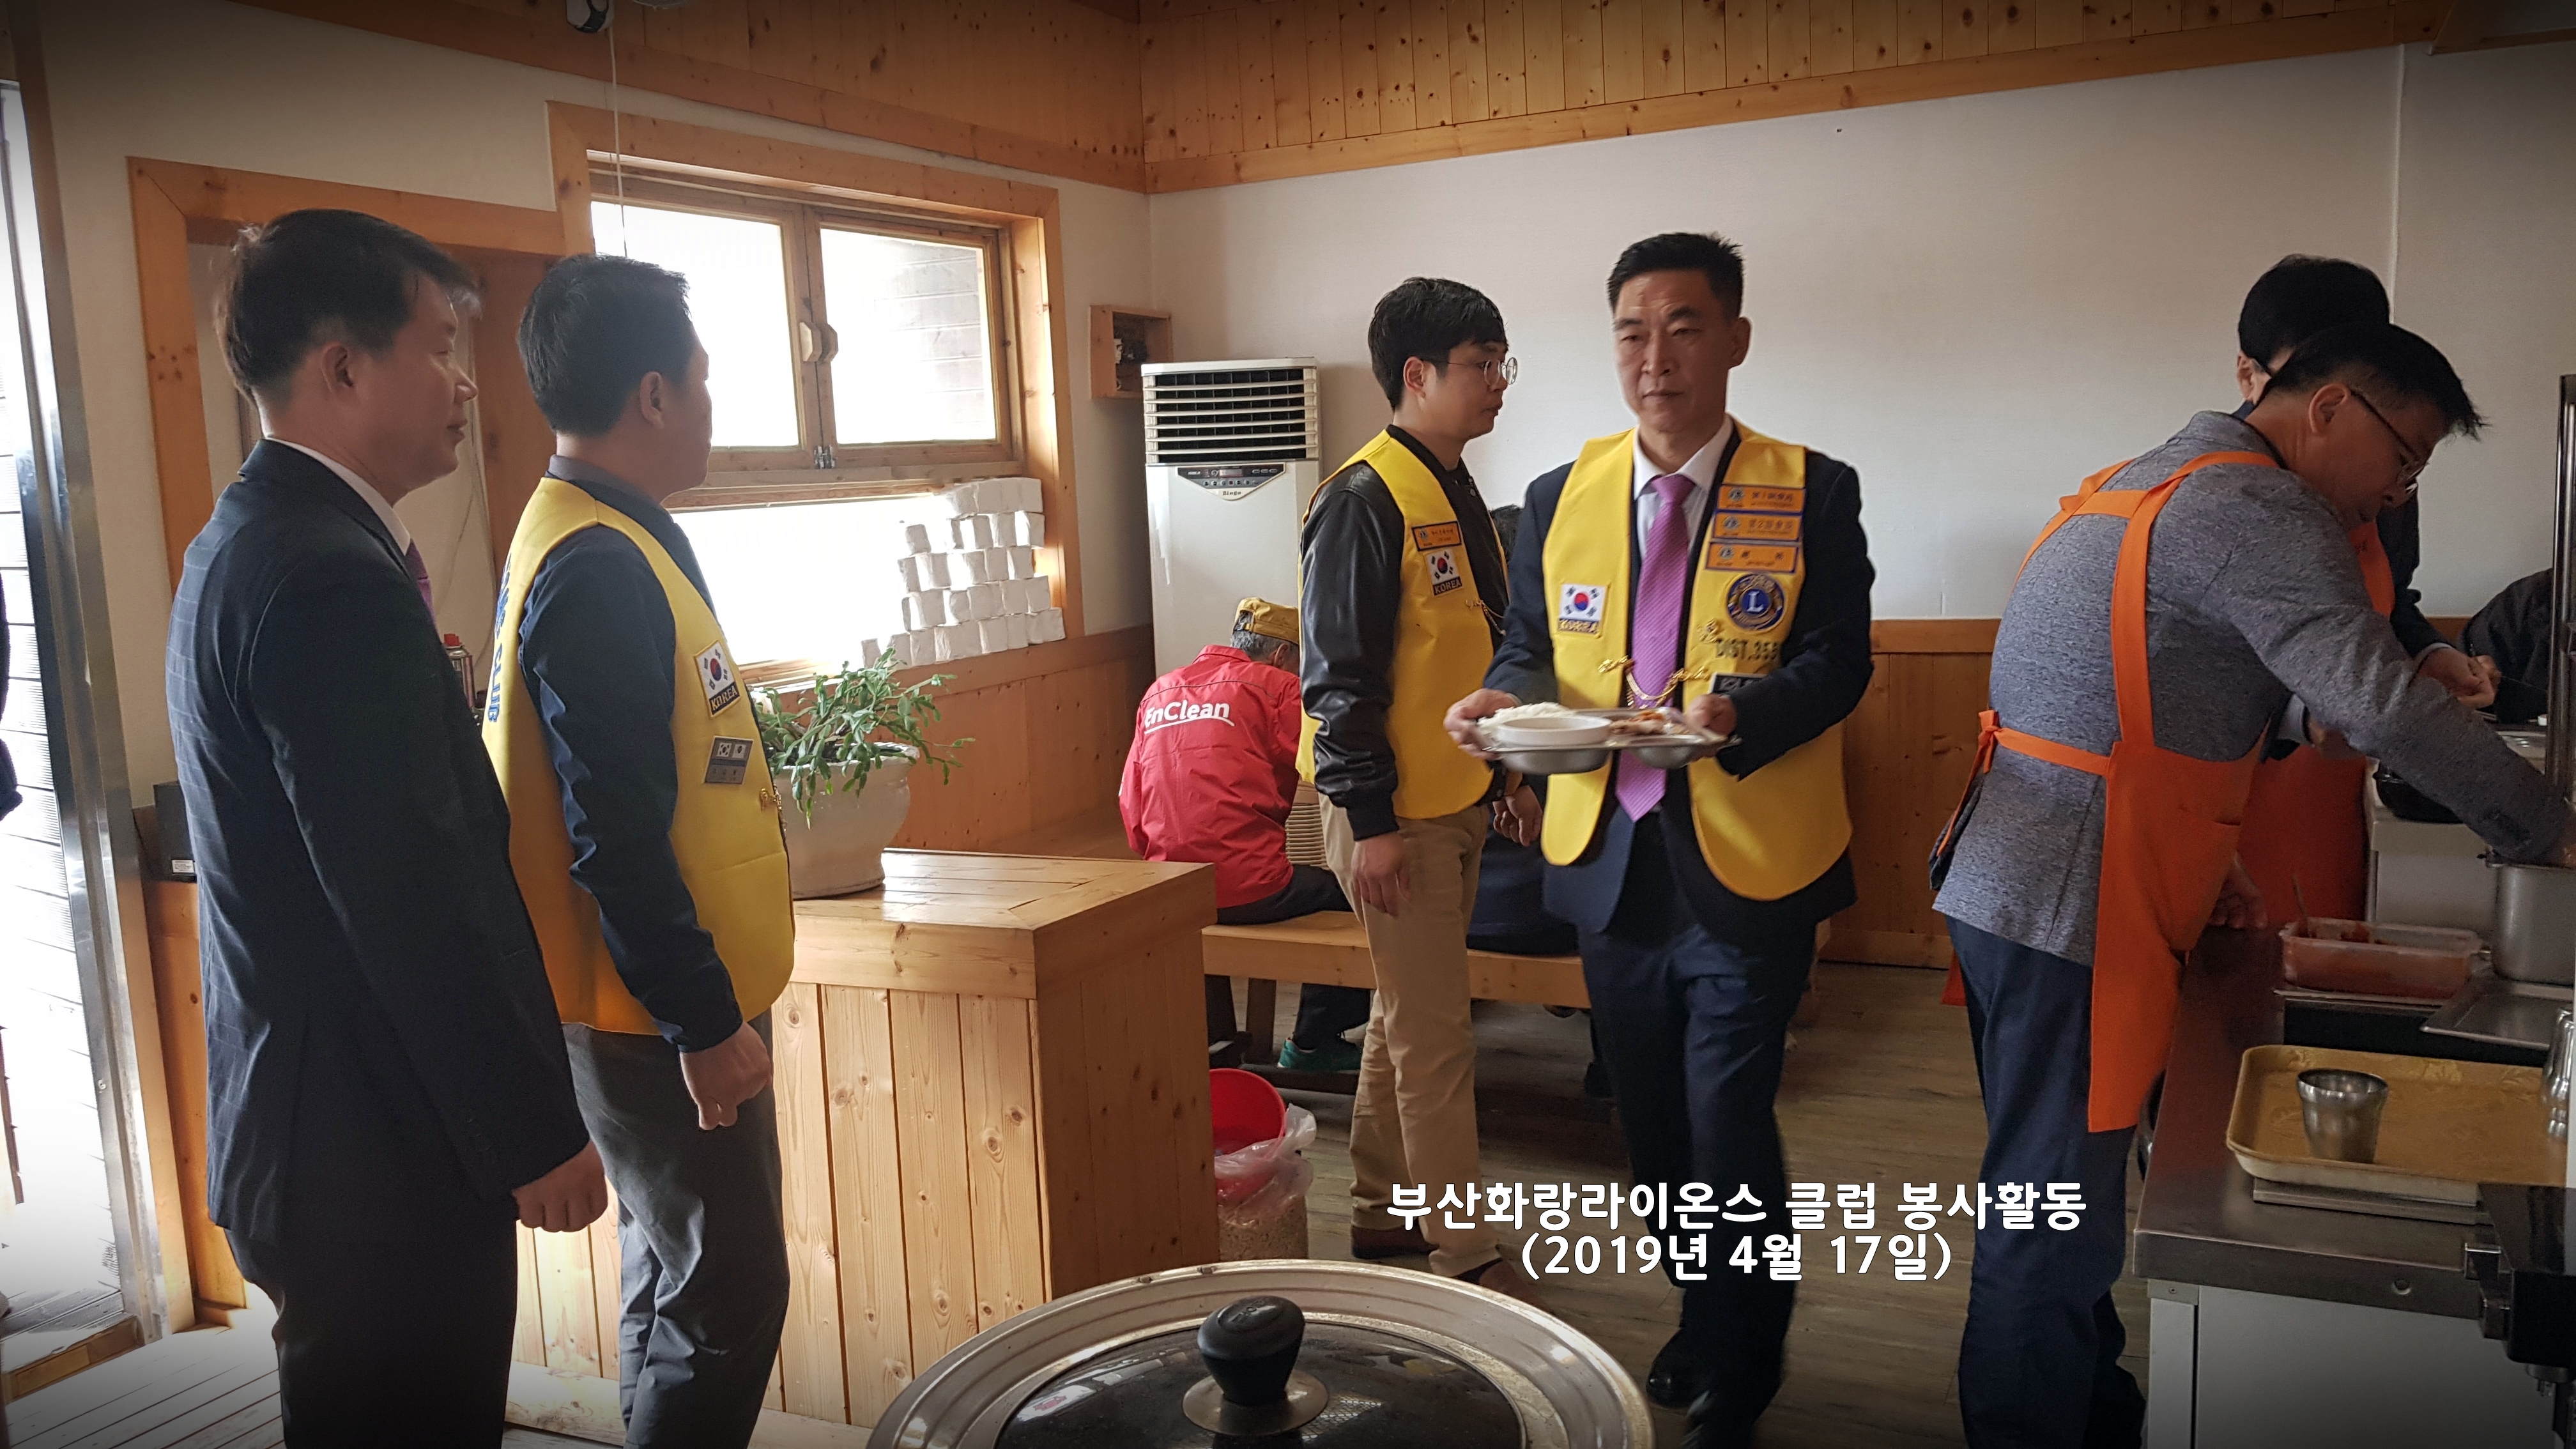 부산화랑라이온스 클럽의 당리동 급식소에서 봉사활동 및 후원금 전달